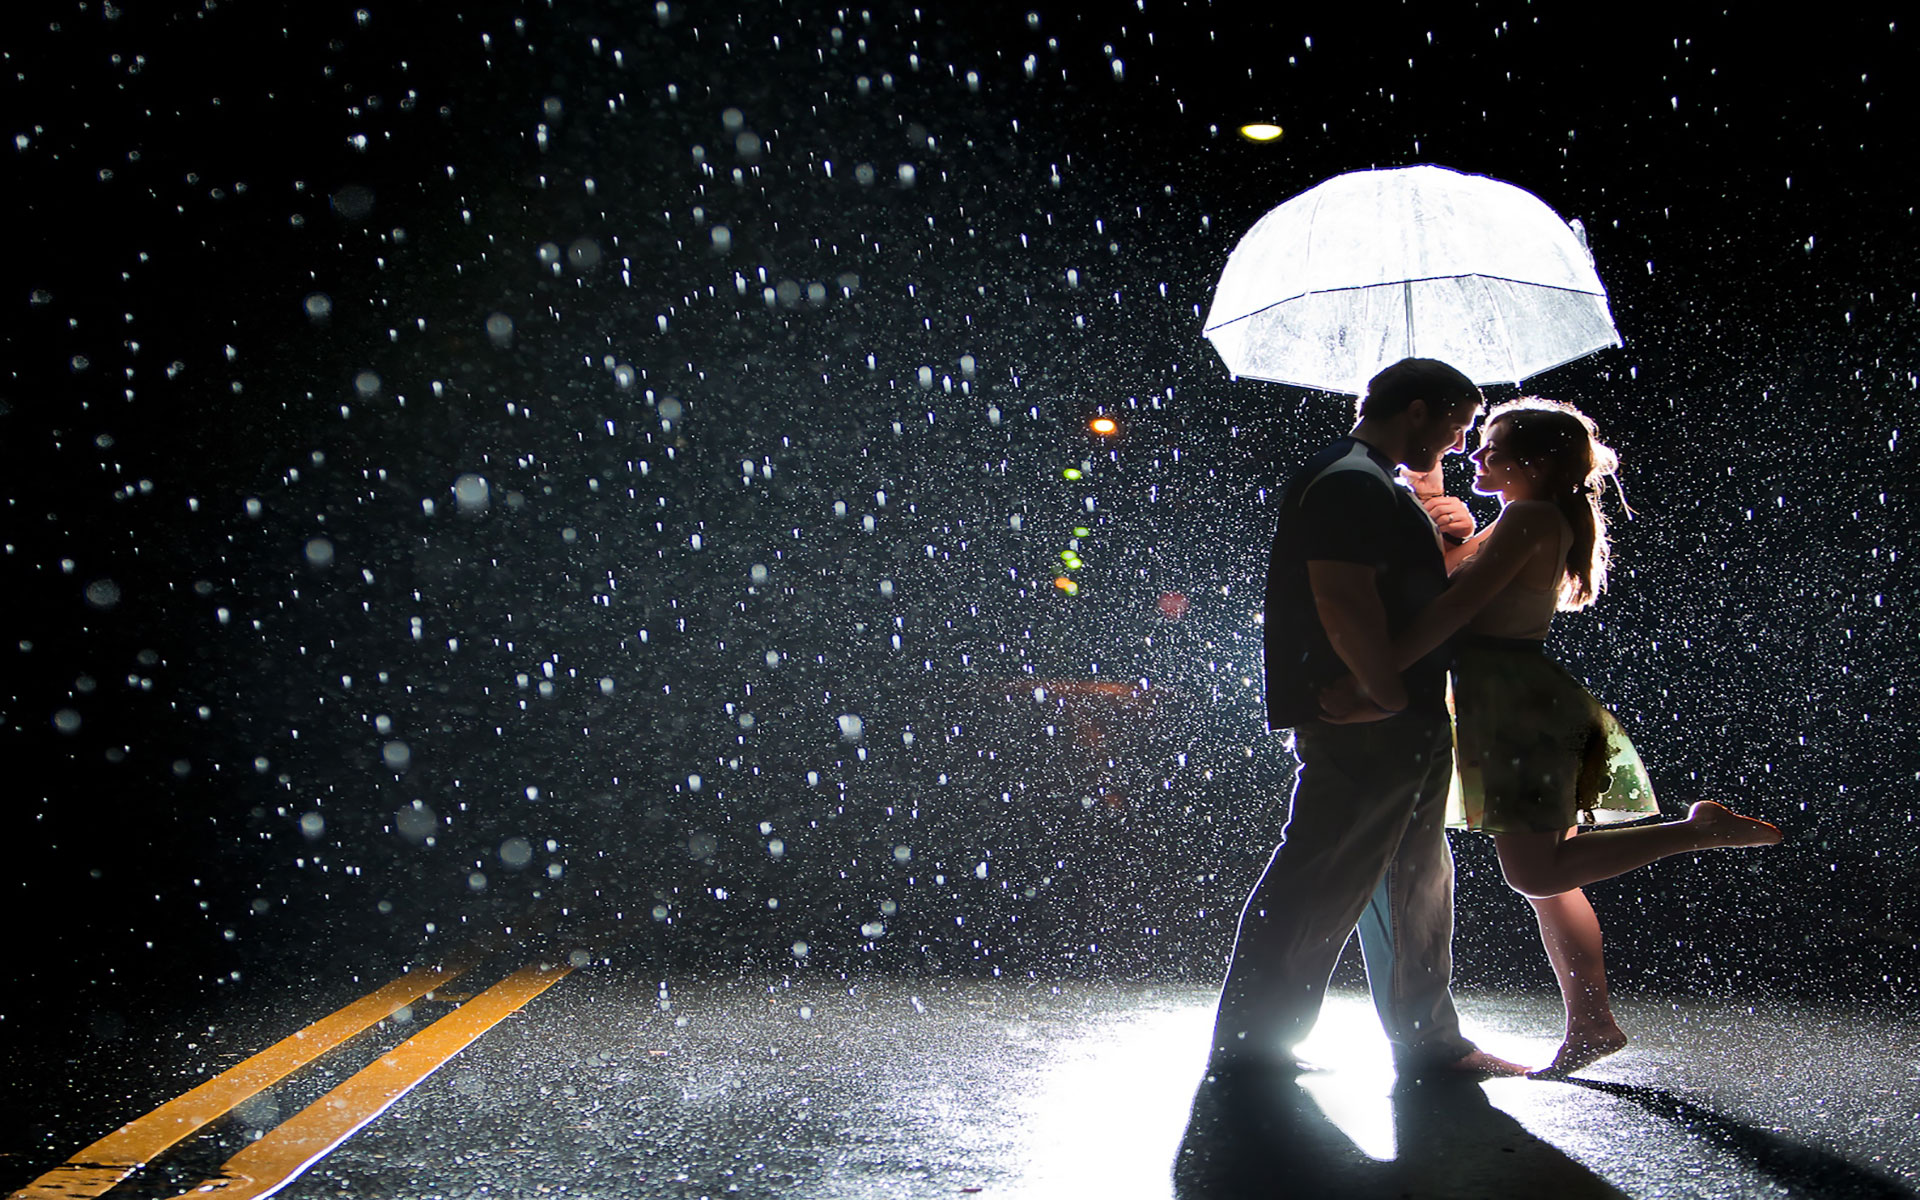 Joy of couple on a rainy street